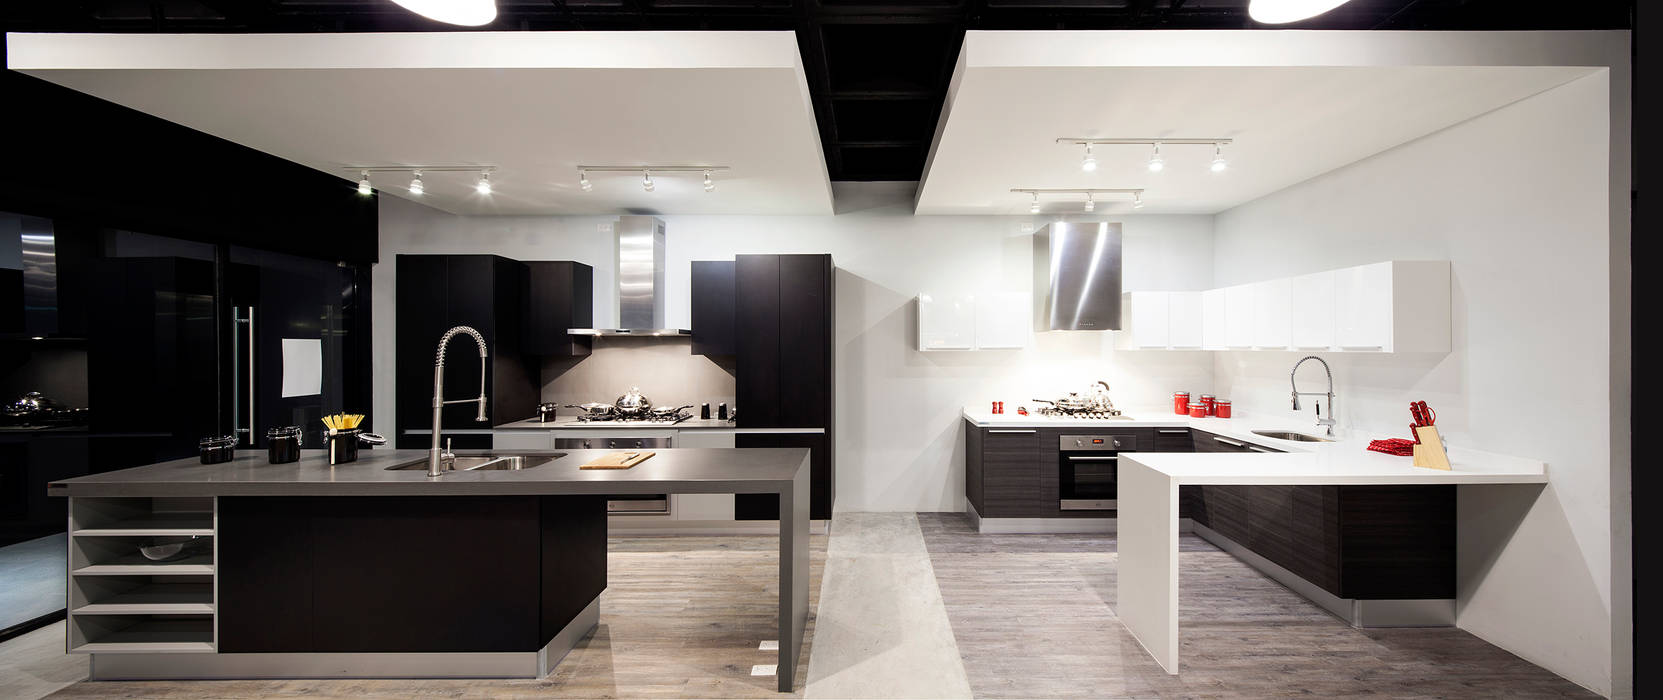 Boato Design Showroom, Accion Reforma Arquitectos Accion Reforma Arquitectos Cocinas modernas